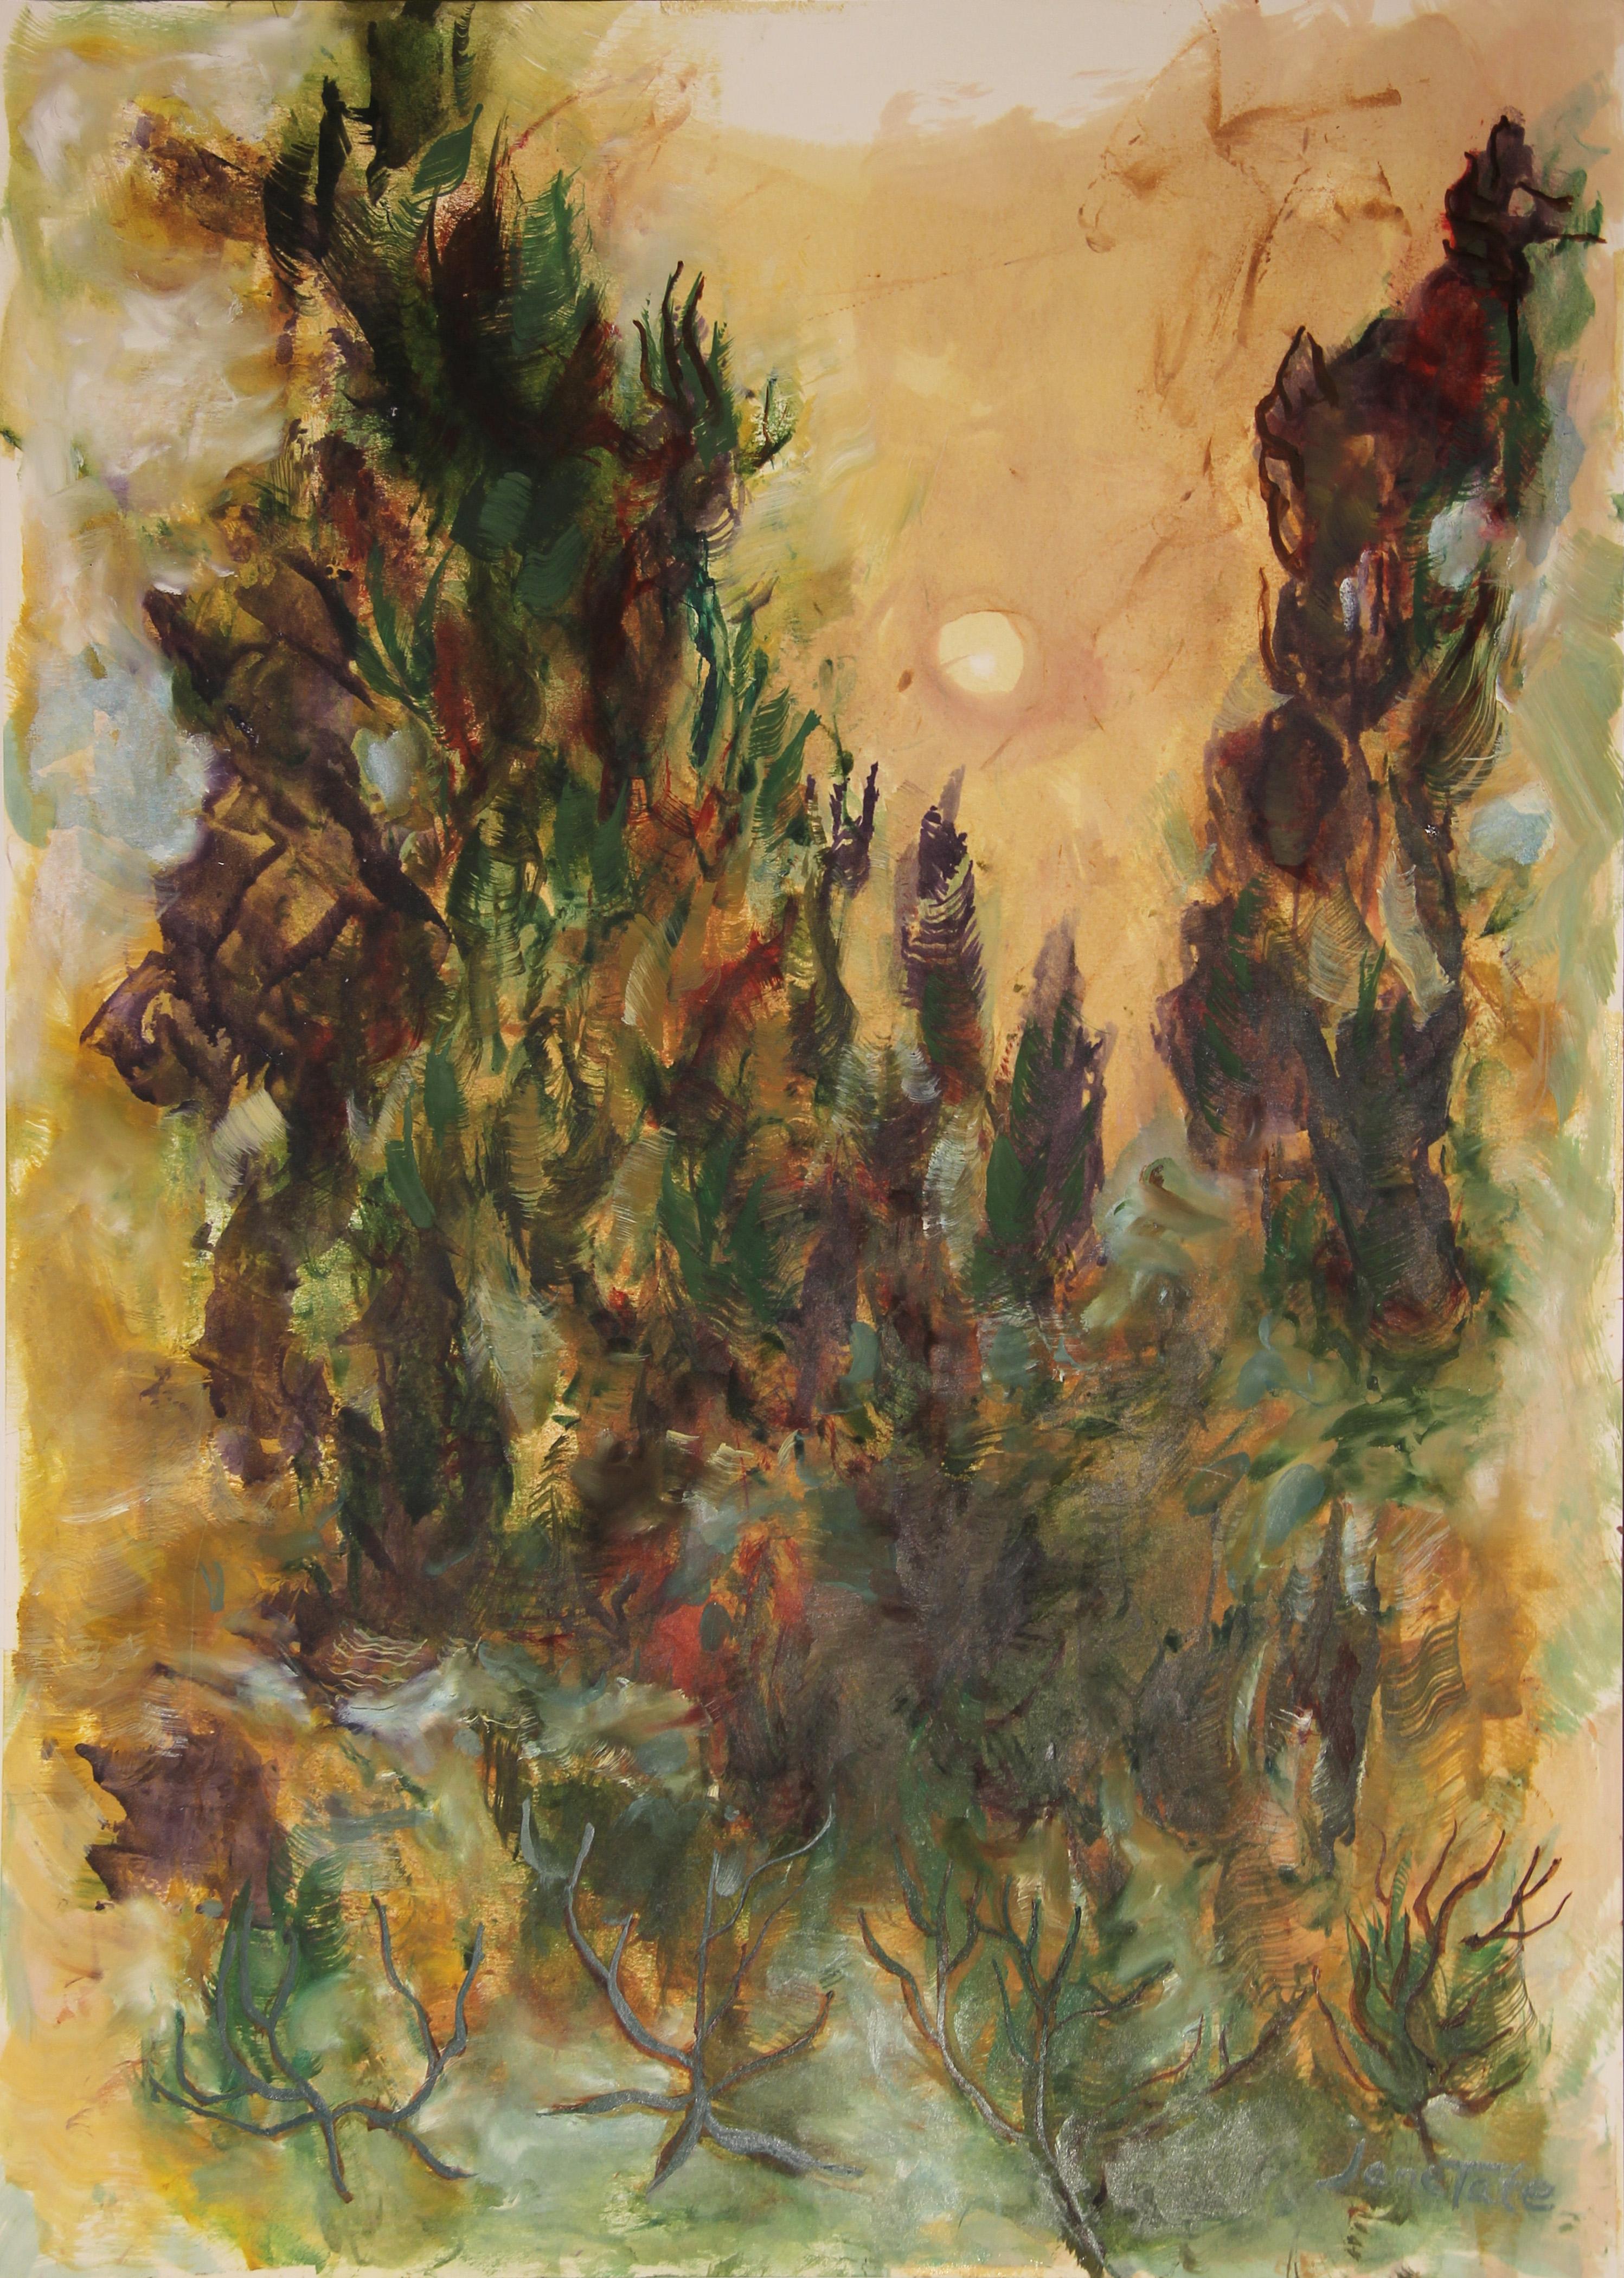 Abstract Painting Jane Tate - Peinture moderne abstraite de paysage à pinceau sauvage vert et violet représentant le soleil et les arbres 